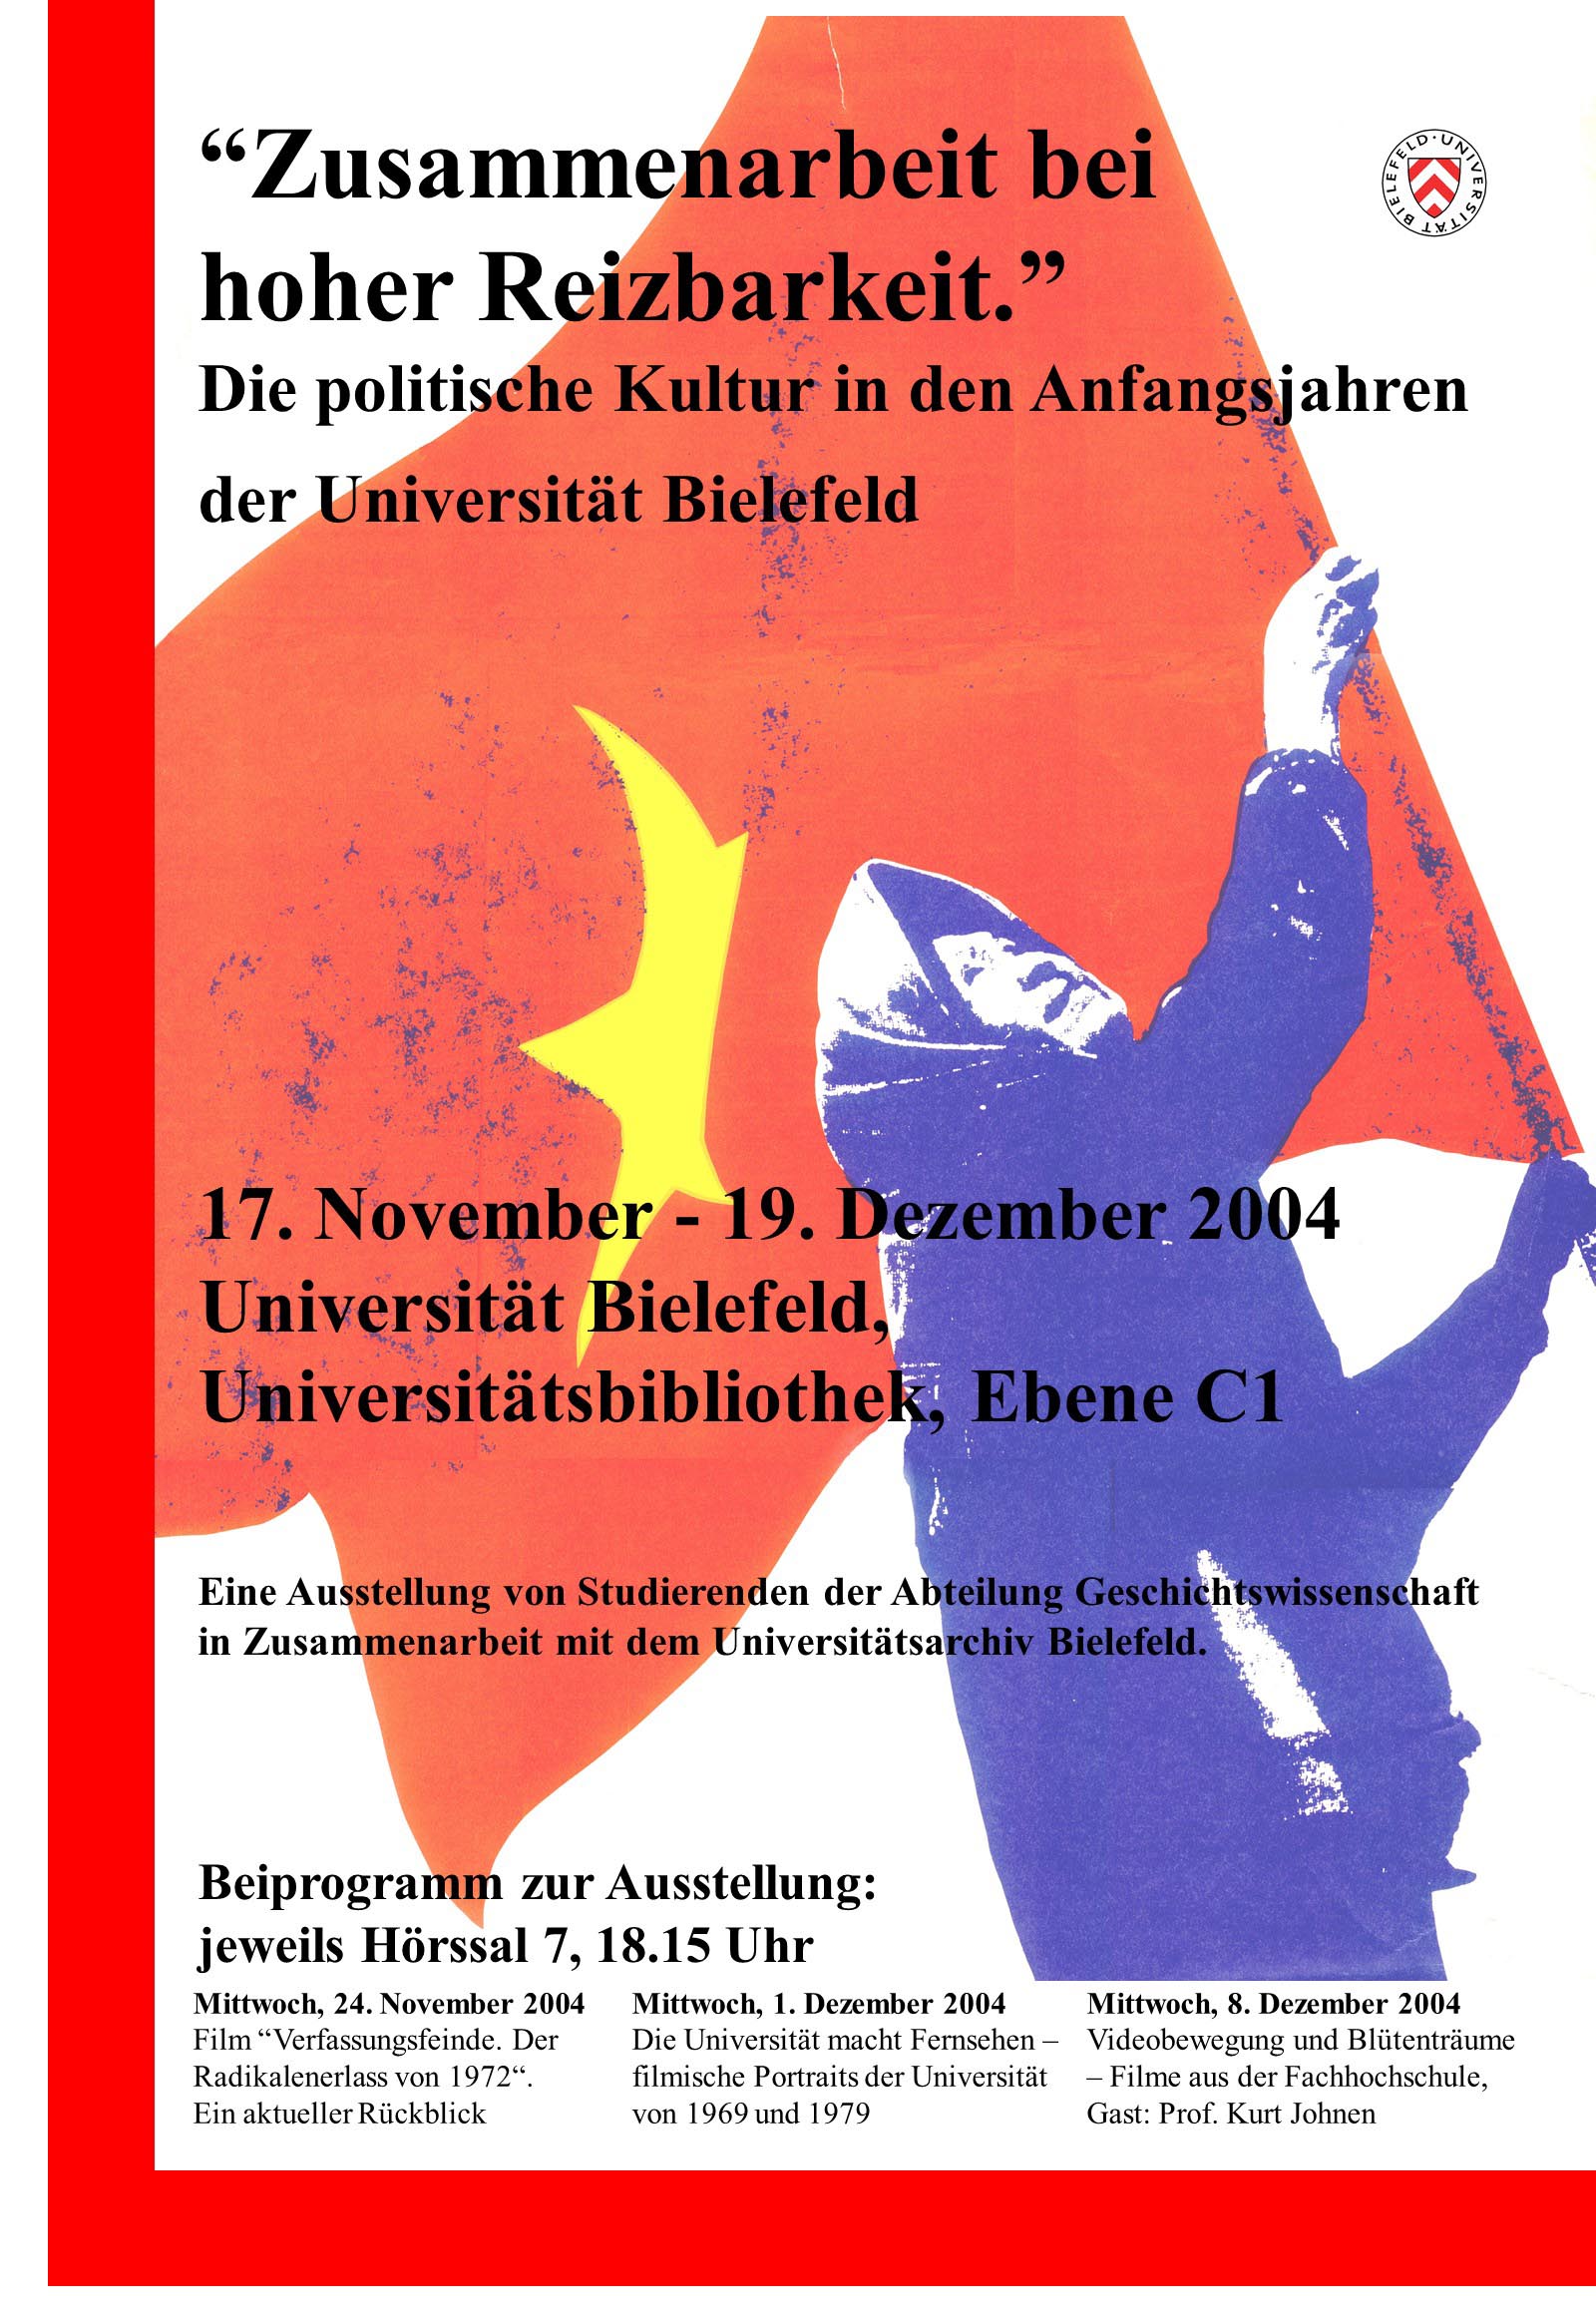 Plakat zur Ausstellung des Universitätsarchivs "Zusammenarbeit bei hoher Reizbarkeit" (2004)